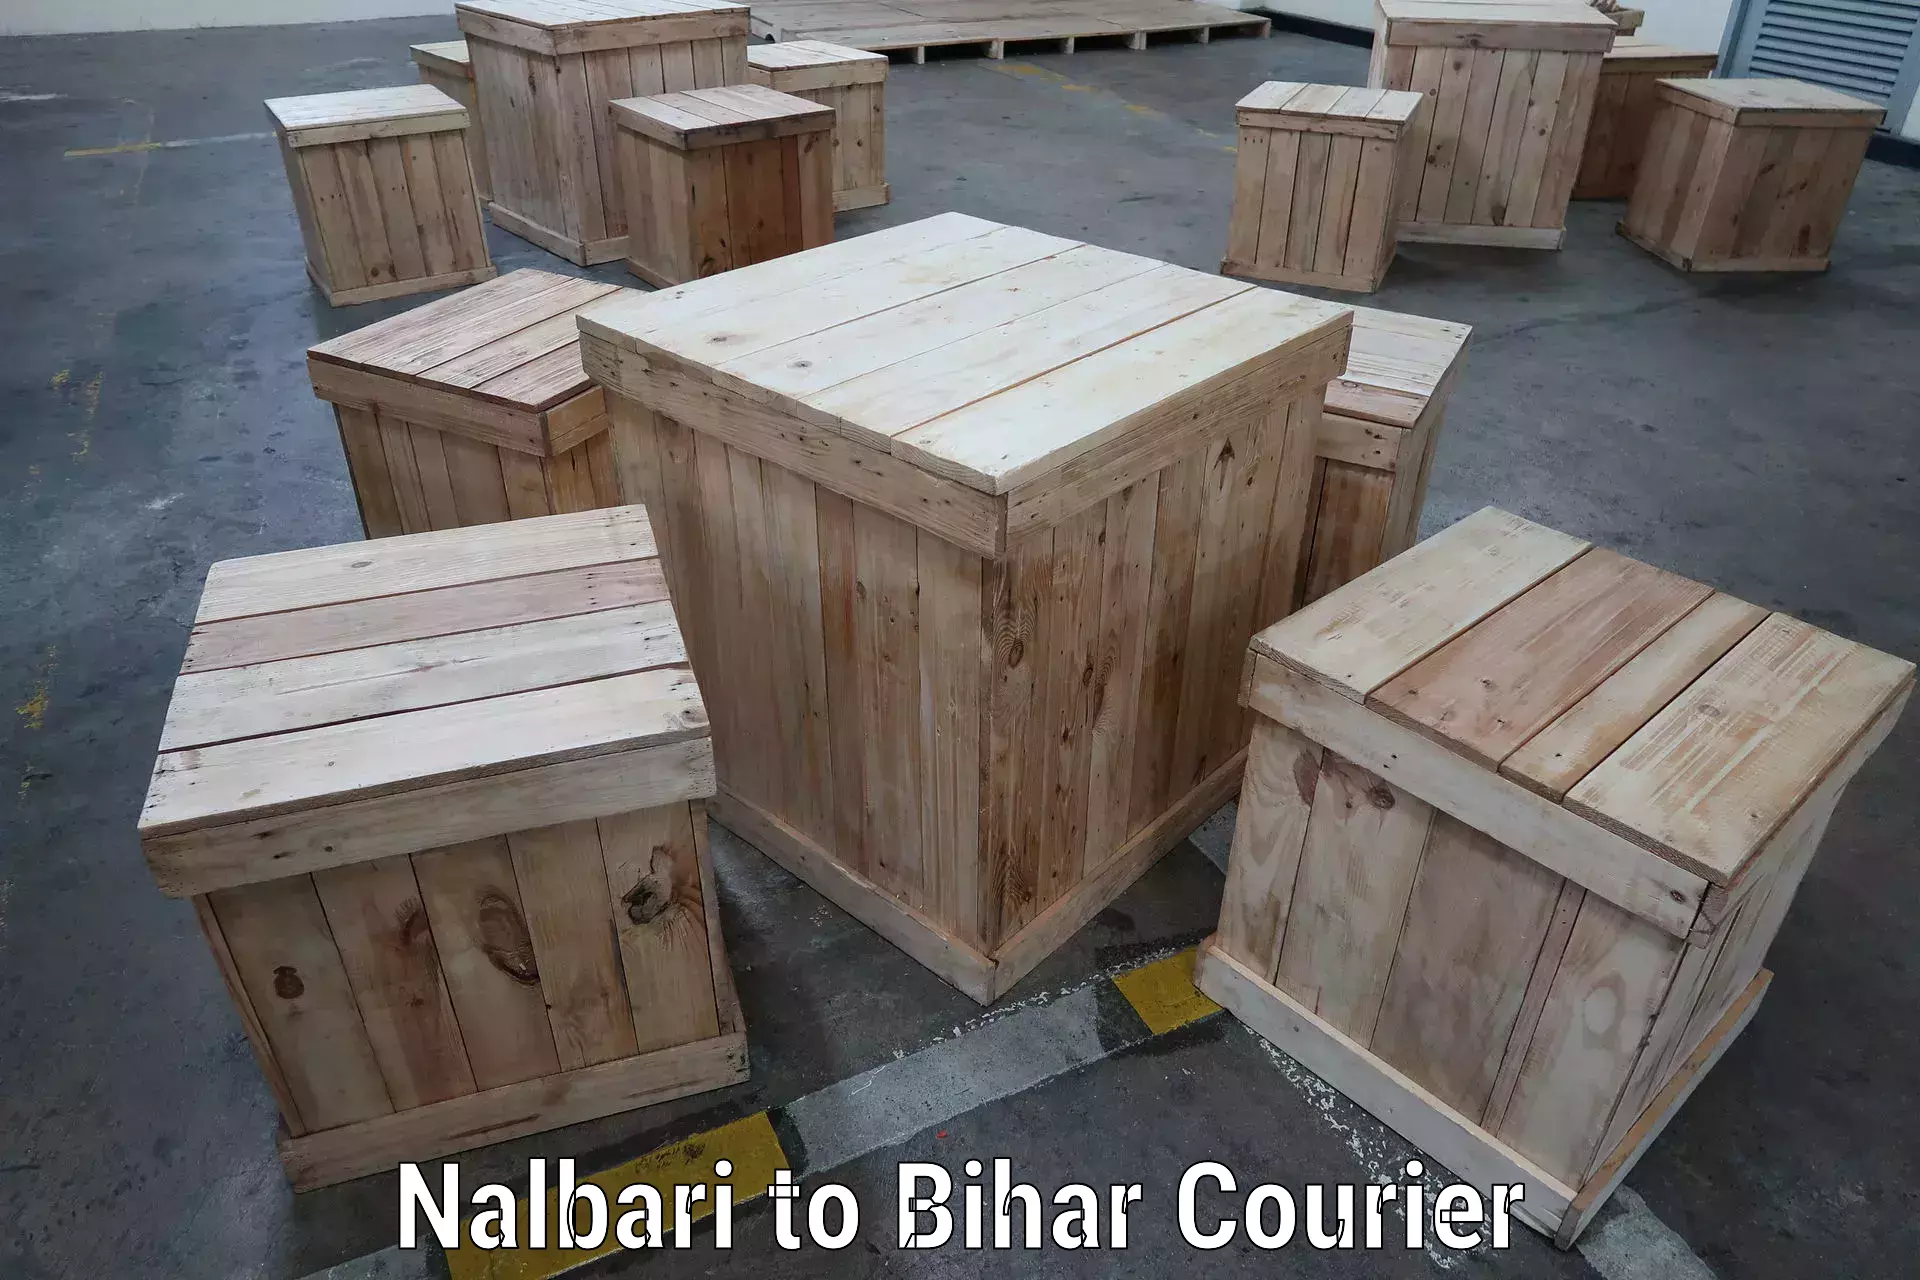 24-hour delivery options Nalbari to Madhepura